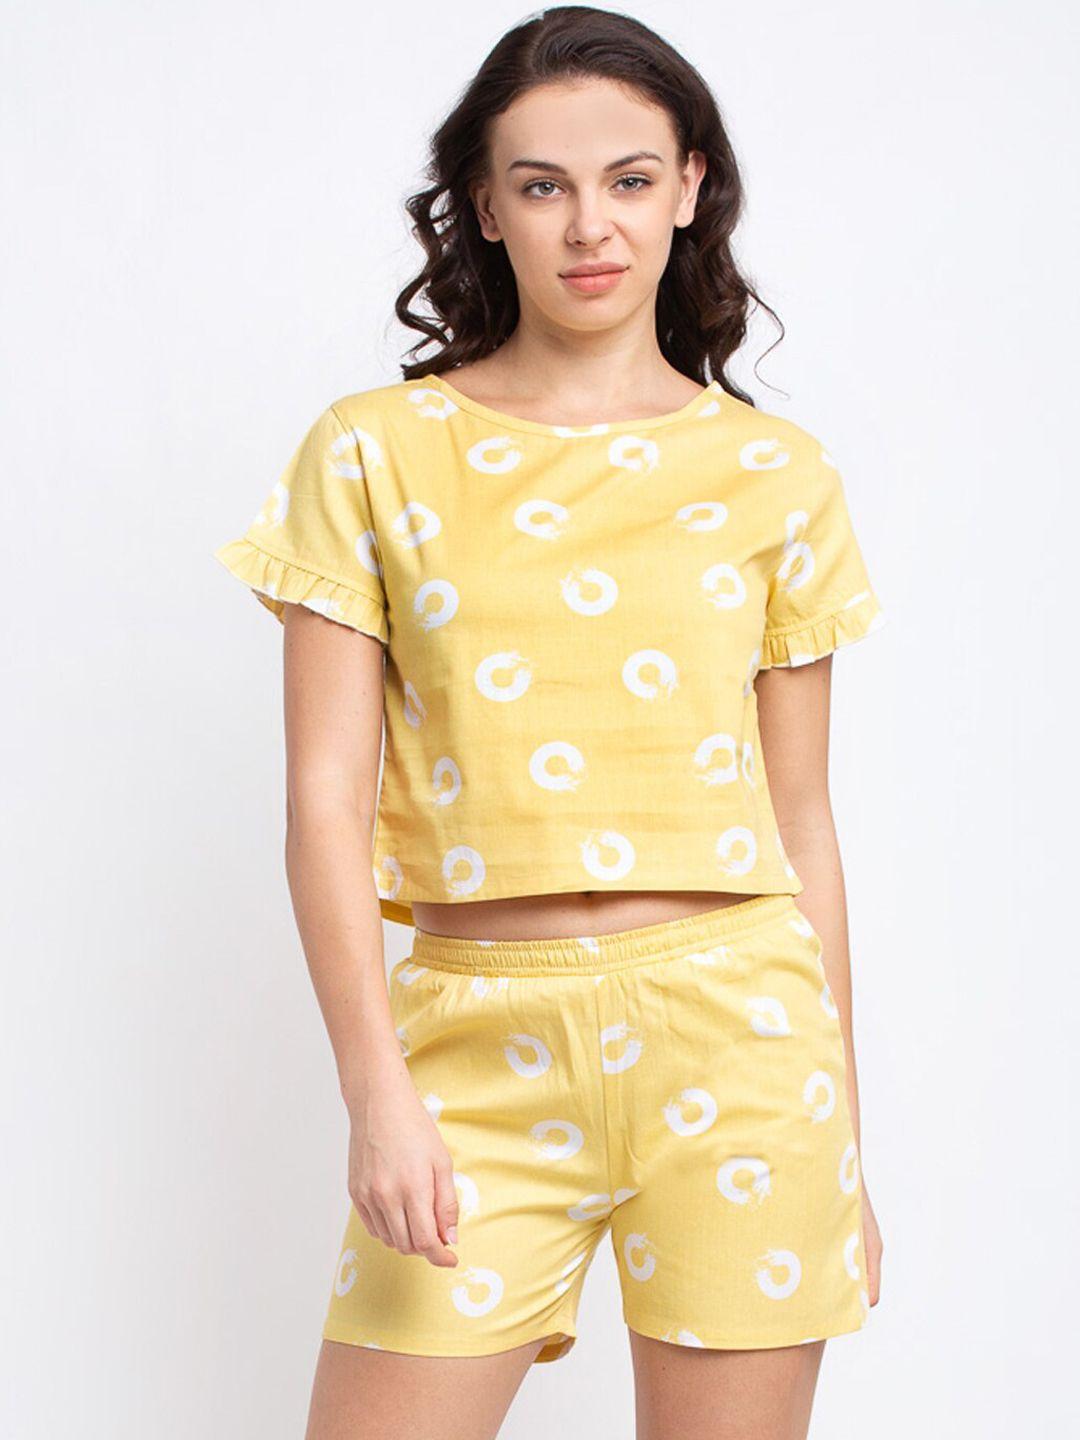 claura women yellow cotton shorts and top loungewear set